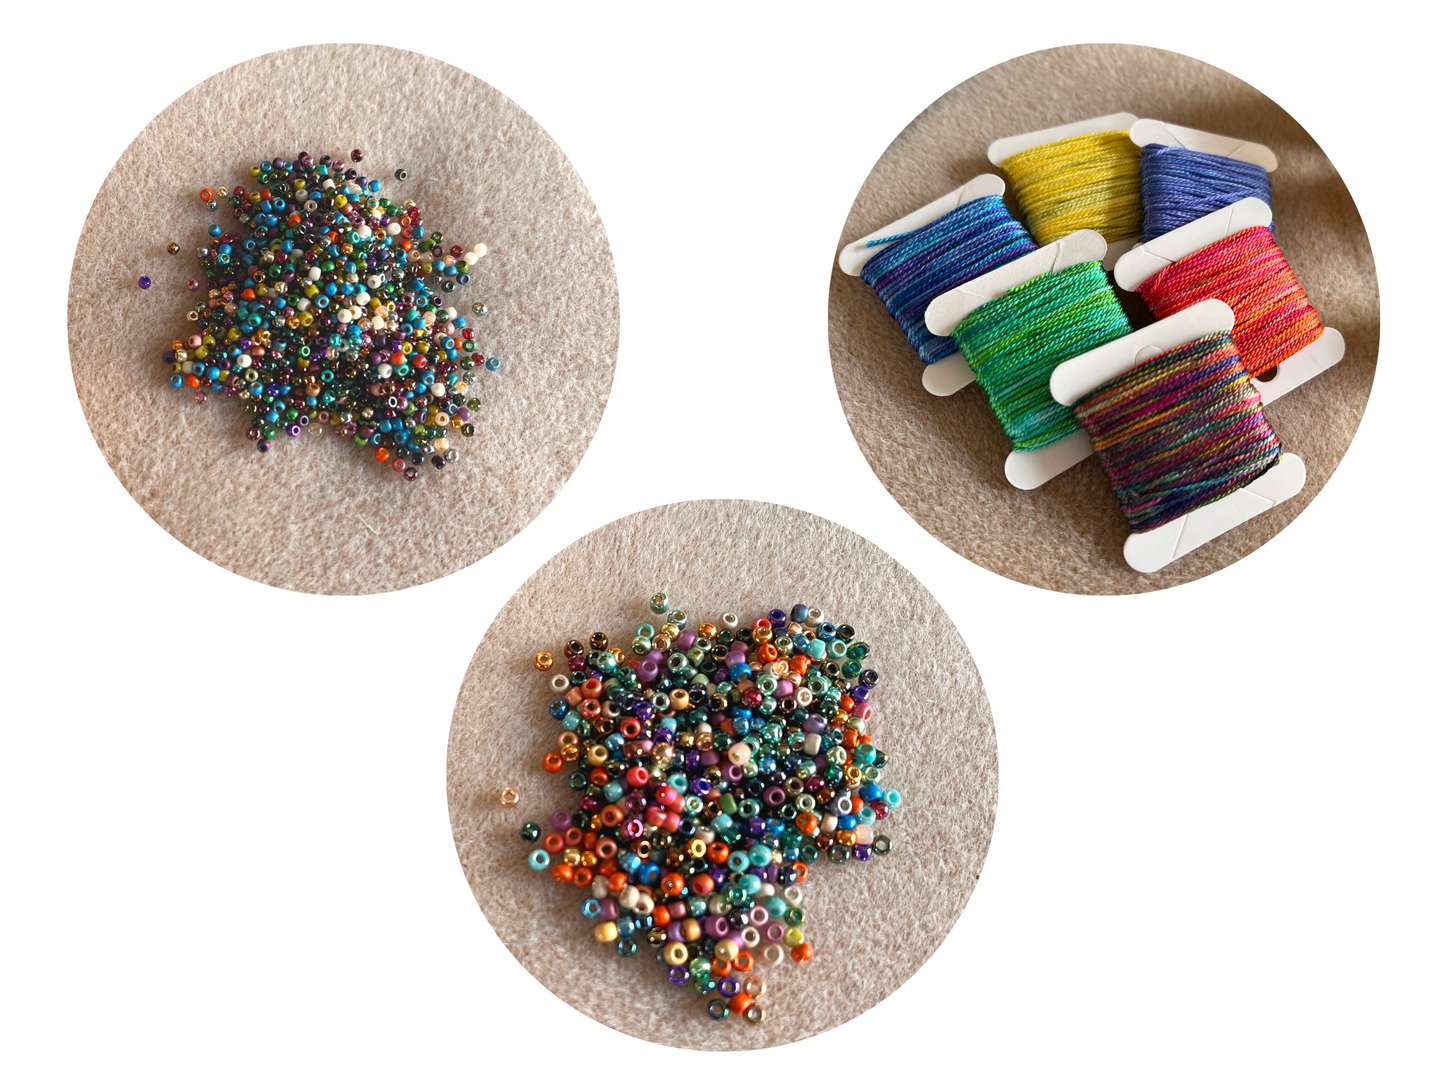 Bookmark/Bracelet Loom kit – Craft Emporium